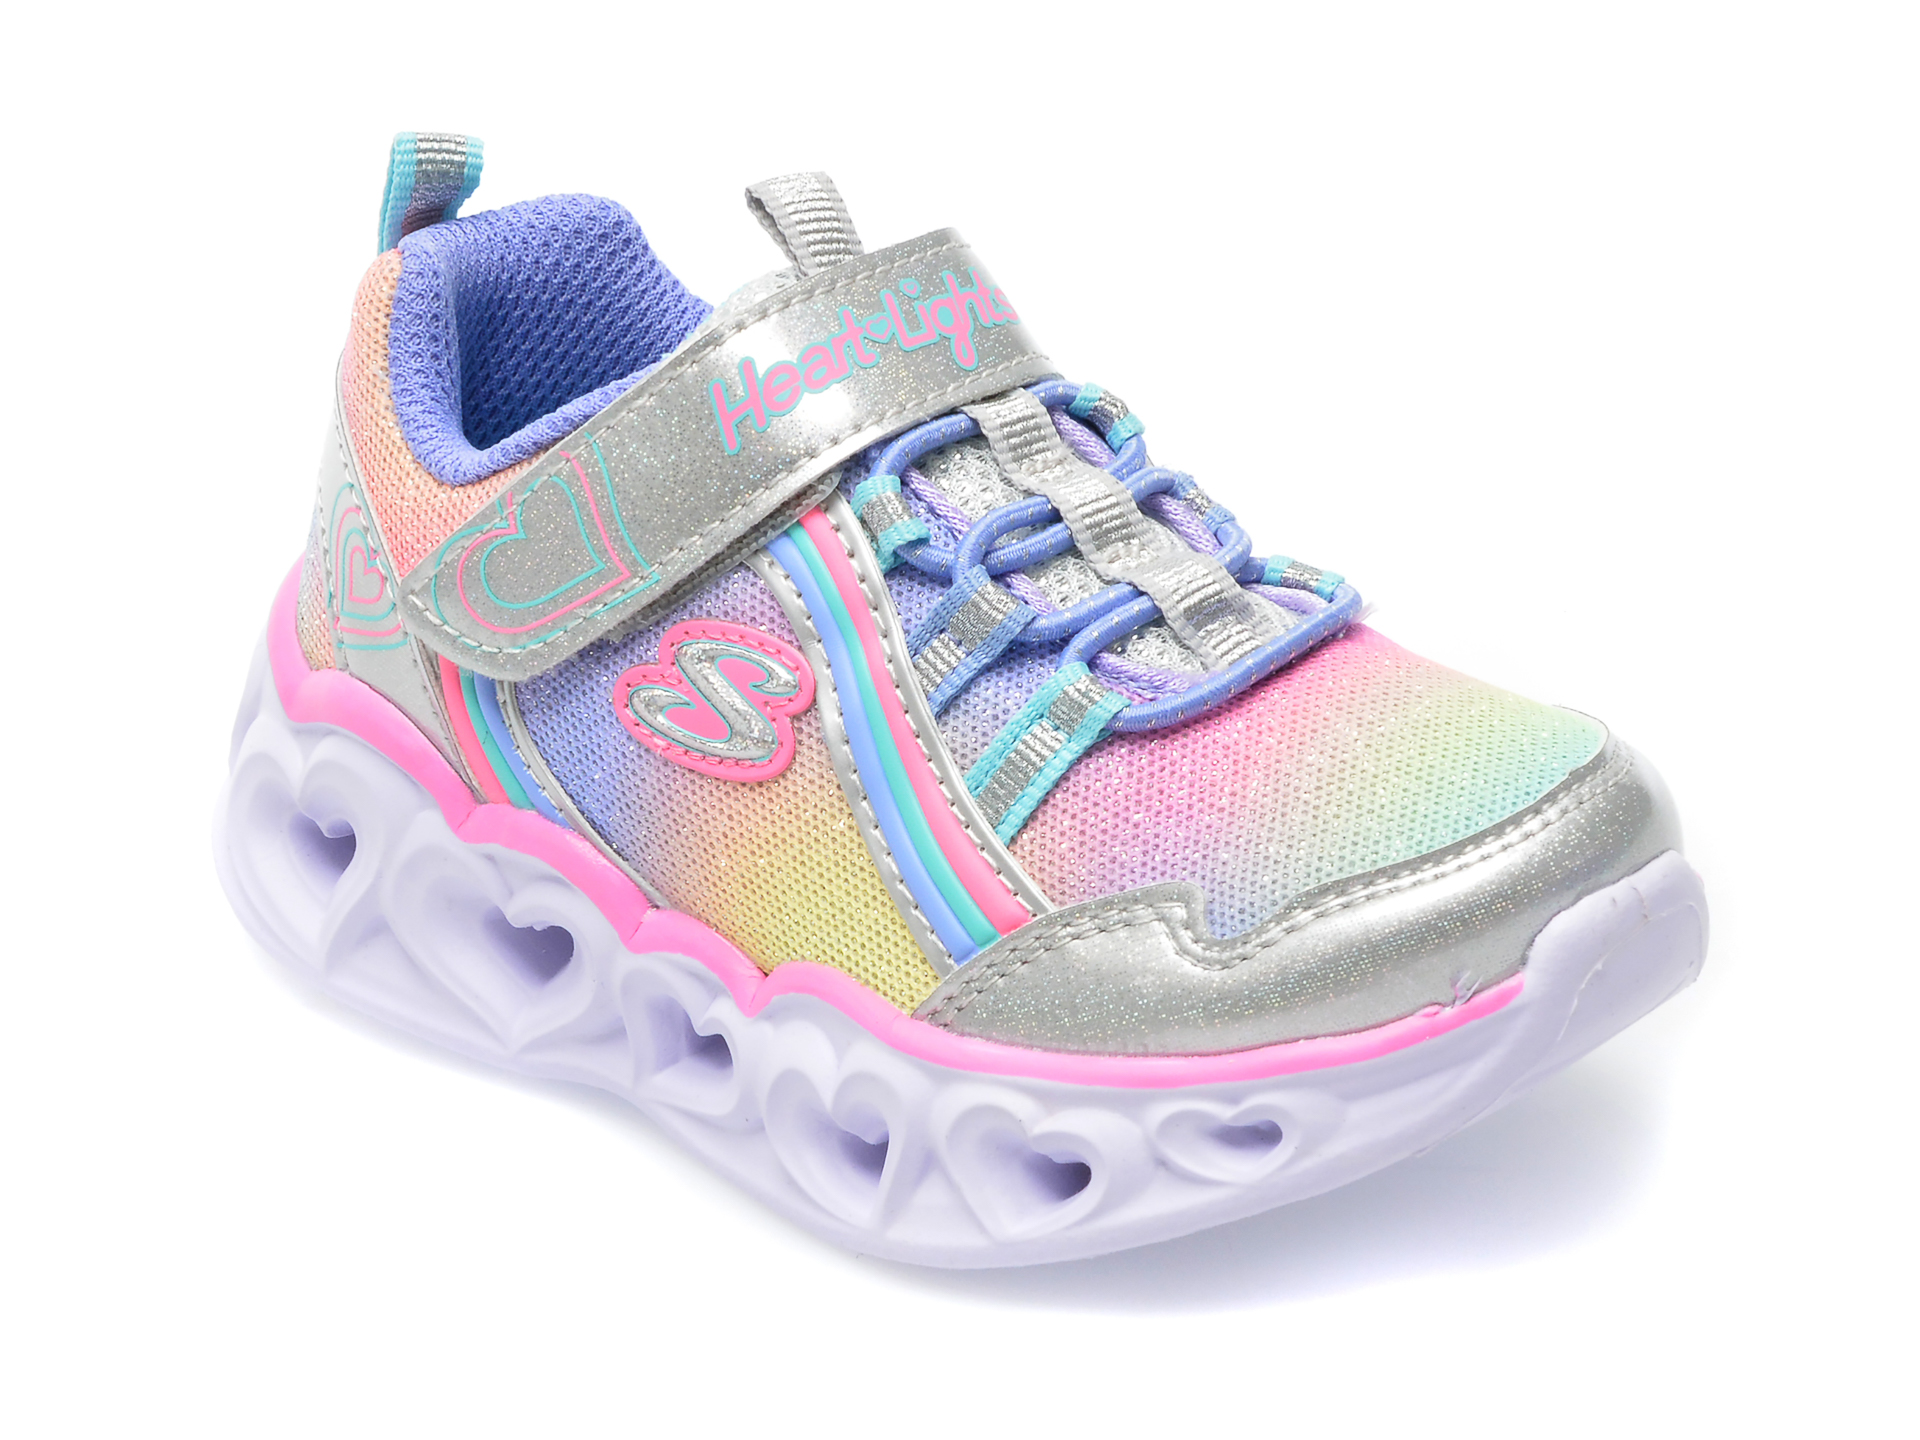 Pantofi sport SKECHERS multicolor, HEART LIGHTS, din piele ecologica /copii/incaltaminte